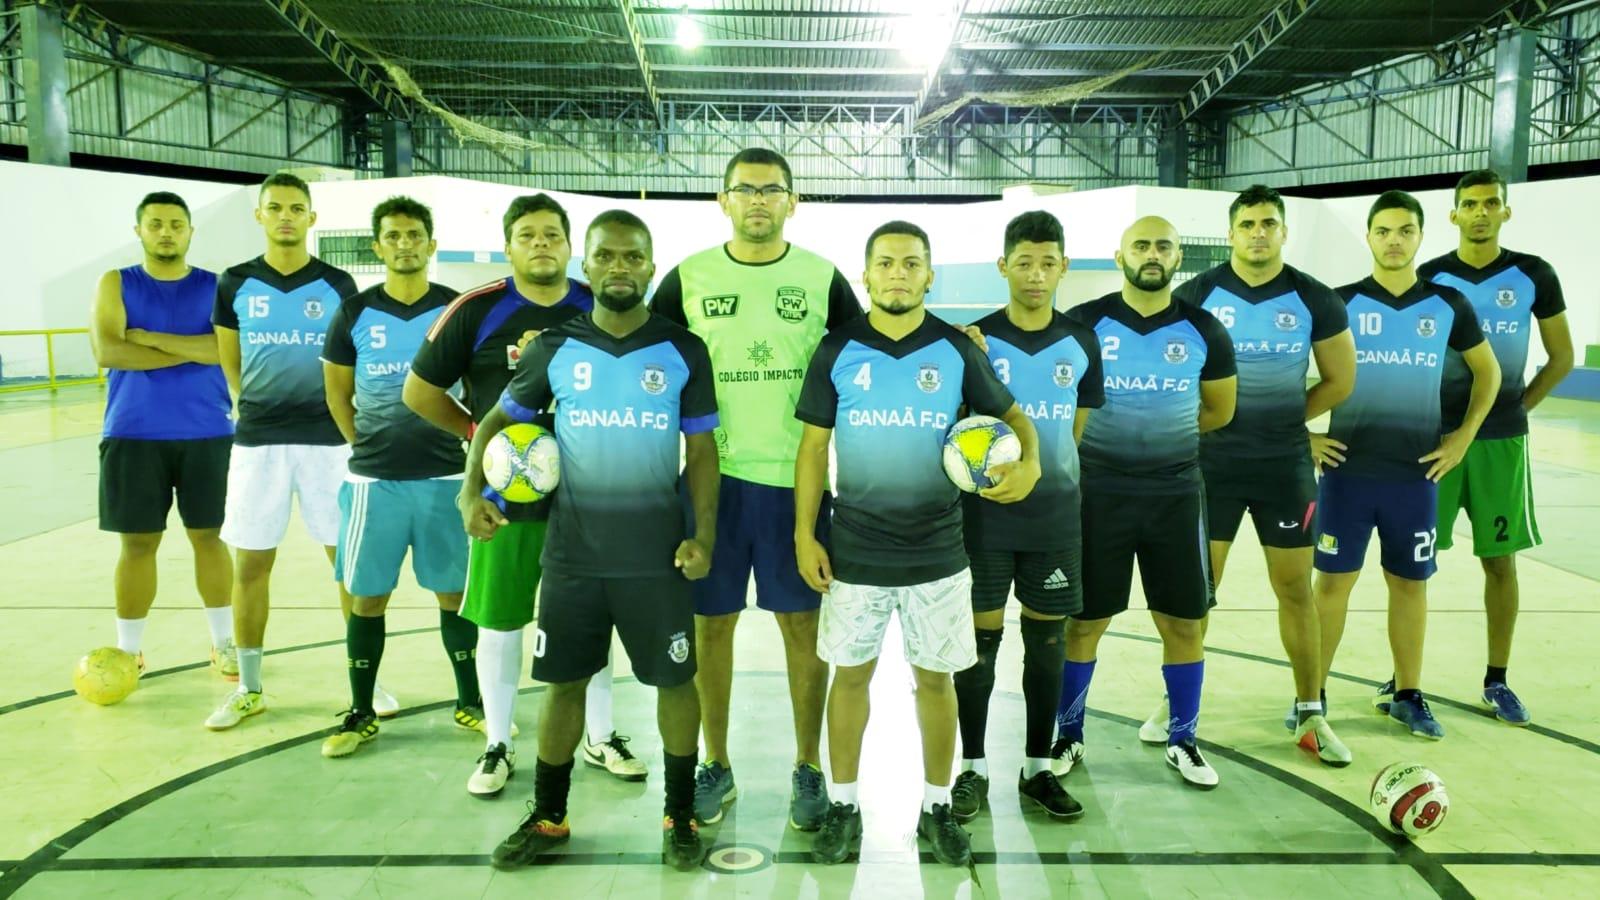 Atual campeão municipal de futsal em Guaraí, Canaã F.C. inicia preparação visando a Série Ouro